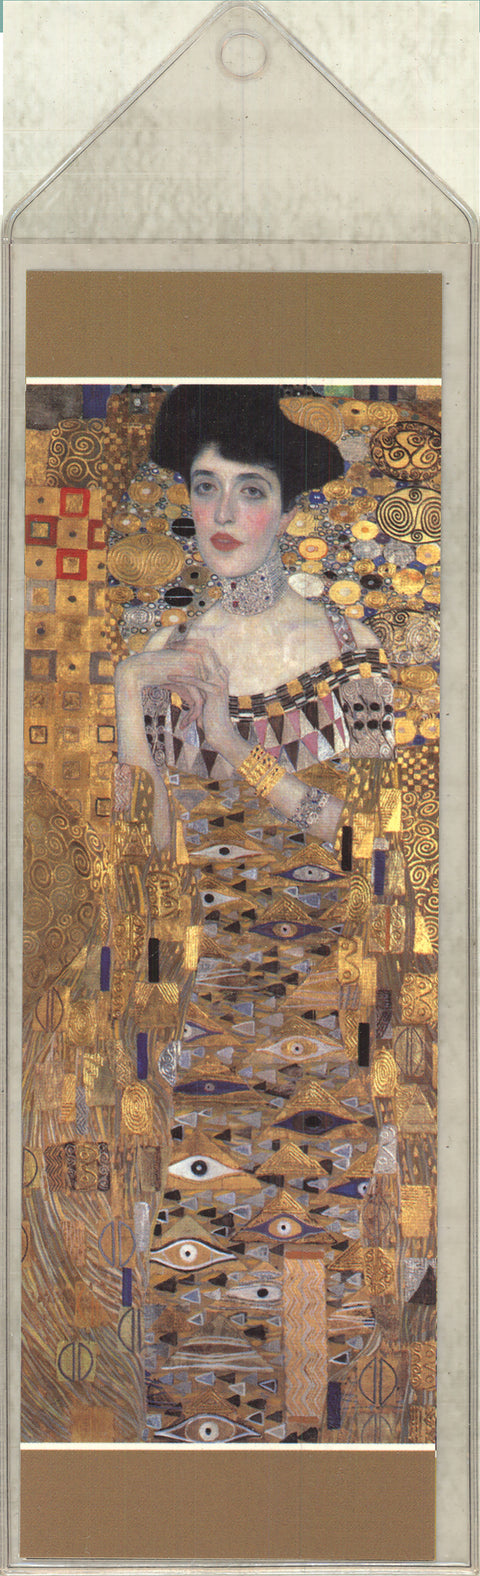 Gustav Klimt Portrait of Adele Bloch-Bauer